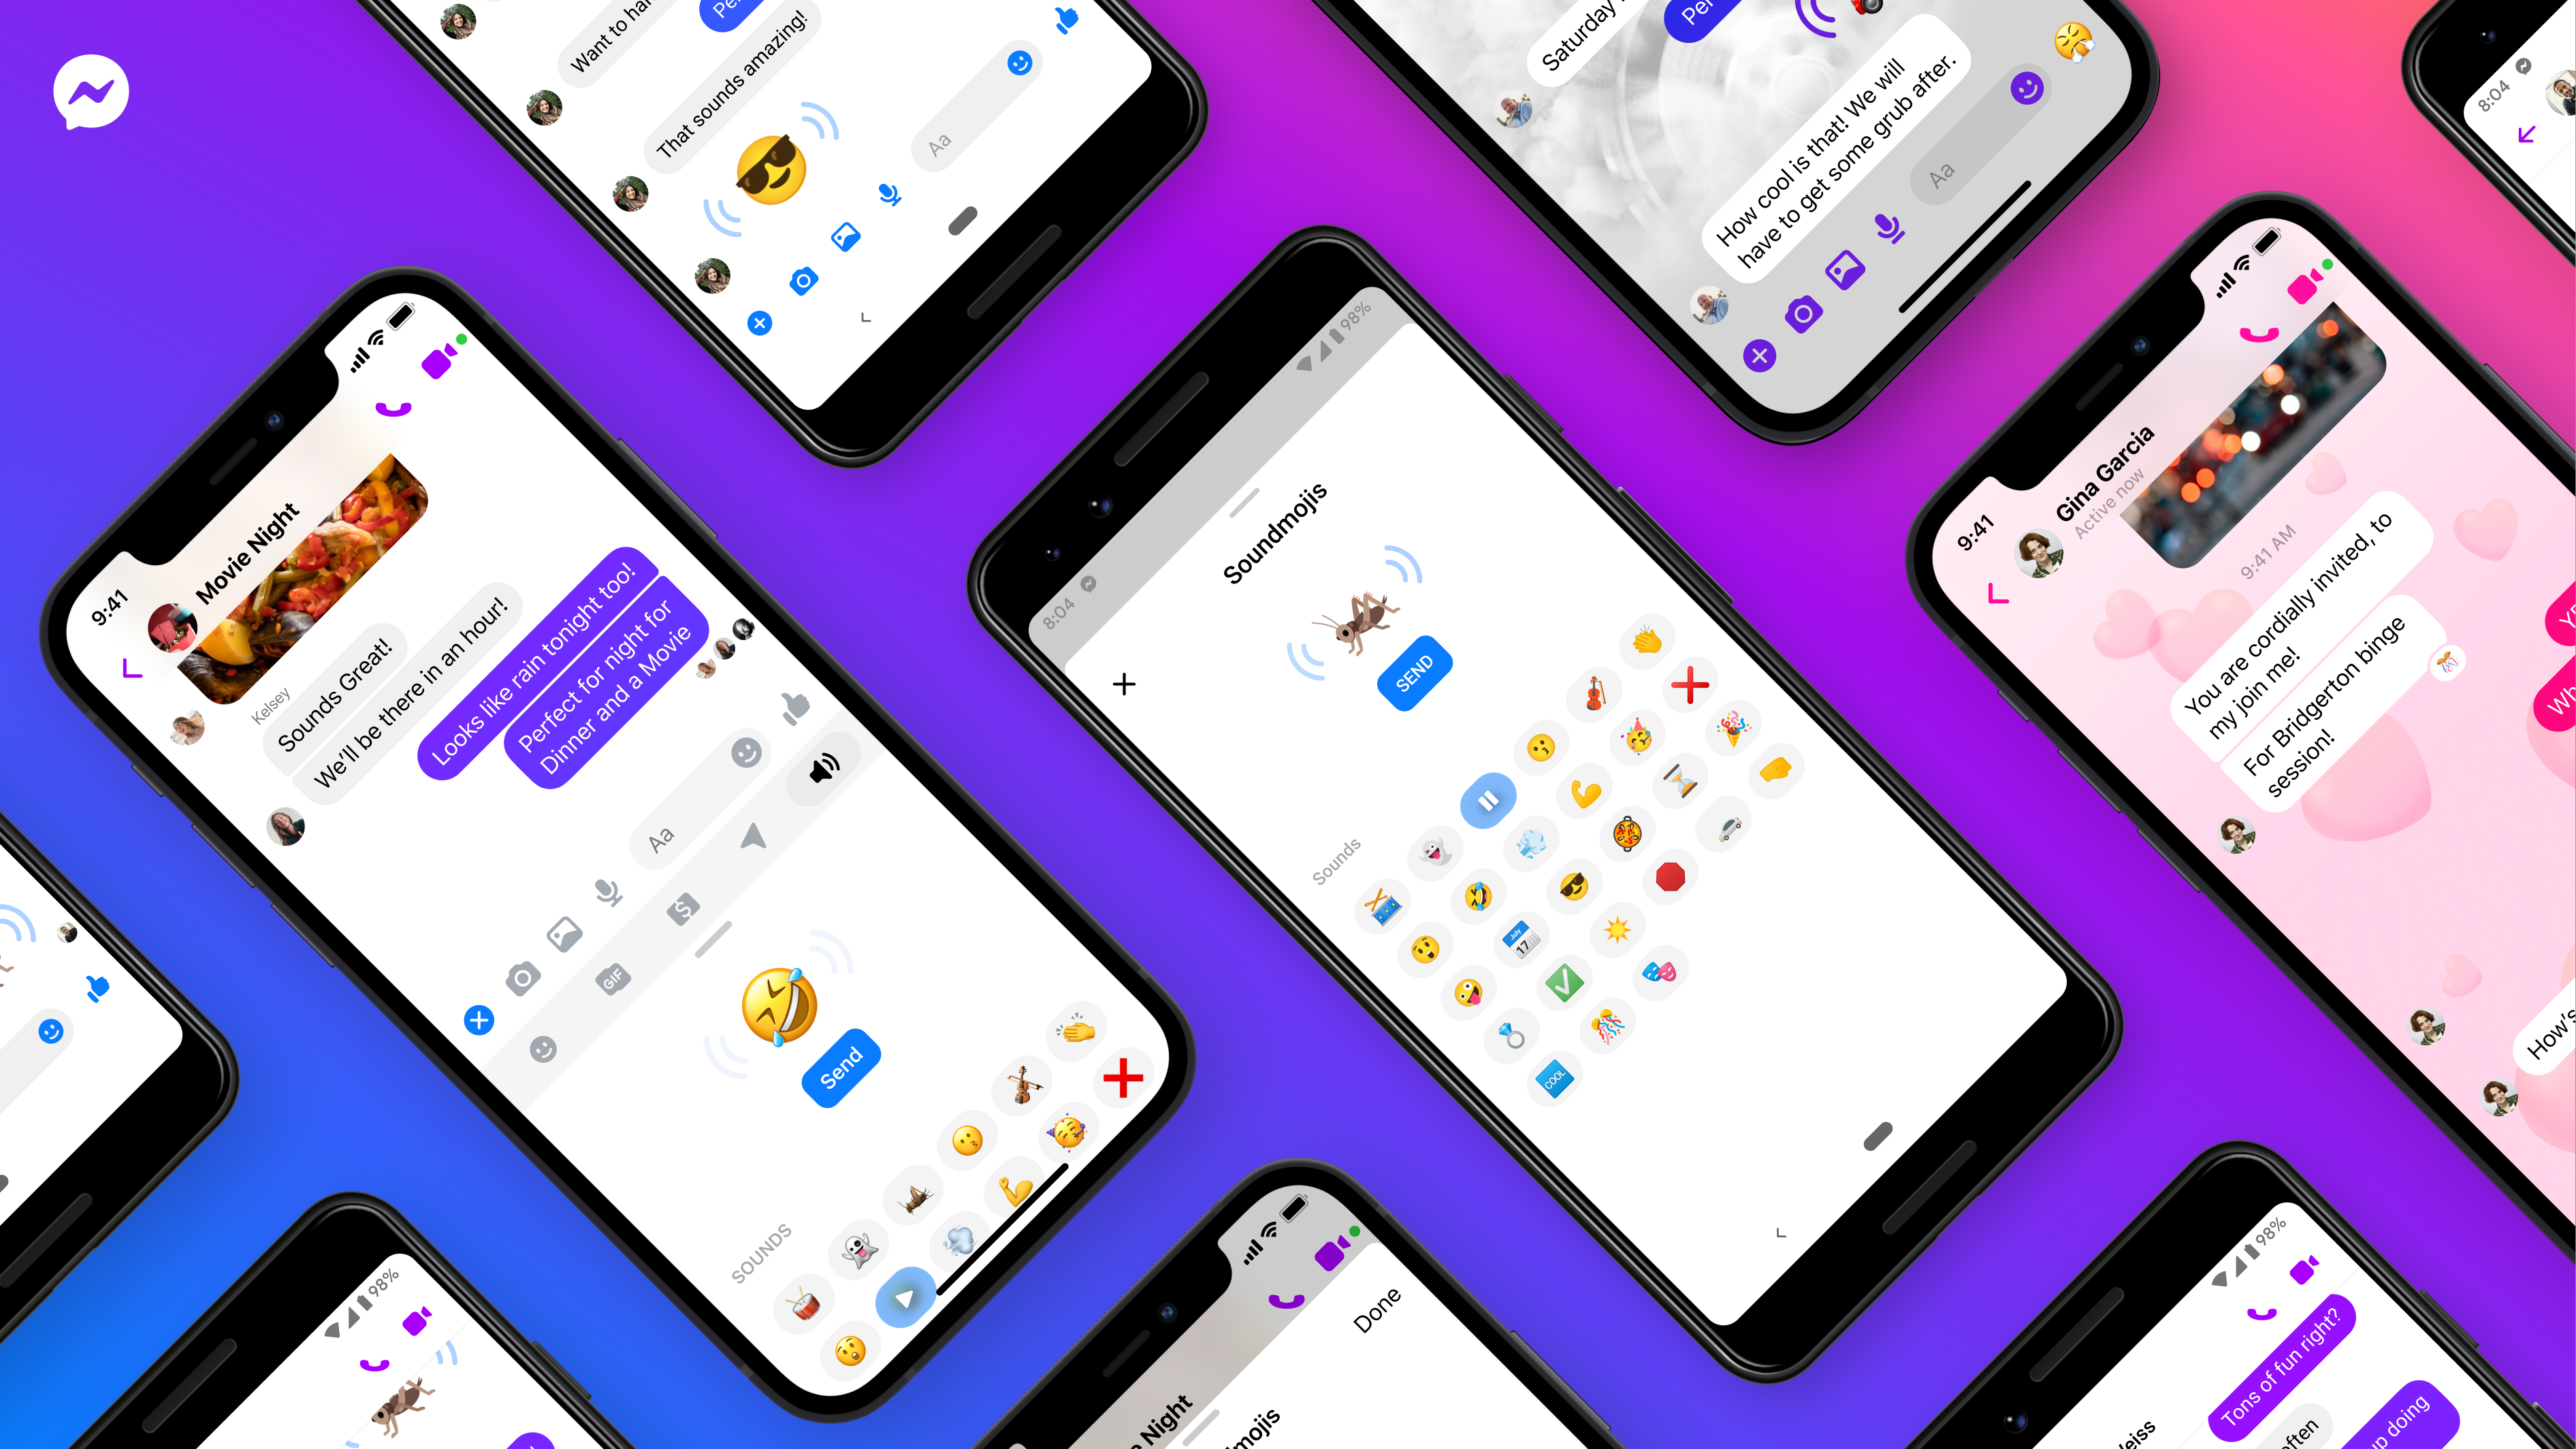 Render Emoji 3d Transparent PNG, Innocent 3d Render Emoji With Angel Ring,  Emoticon, Cartoon, Face PNG Image For Free Download